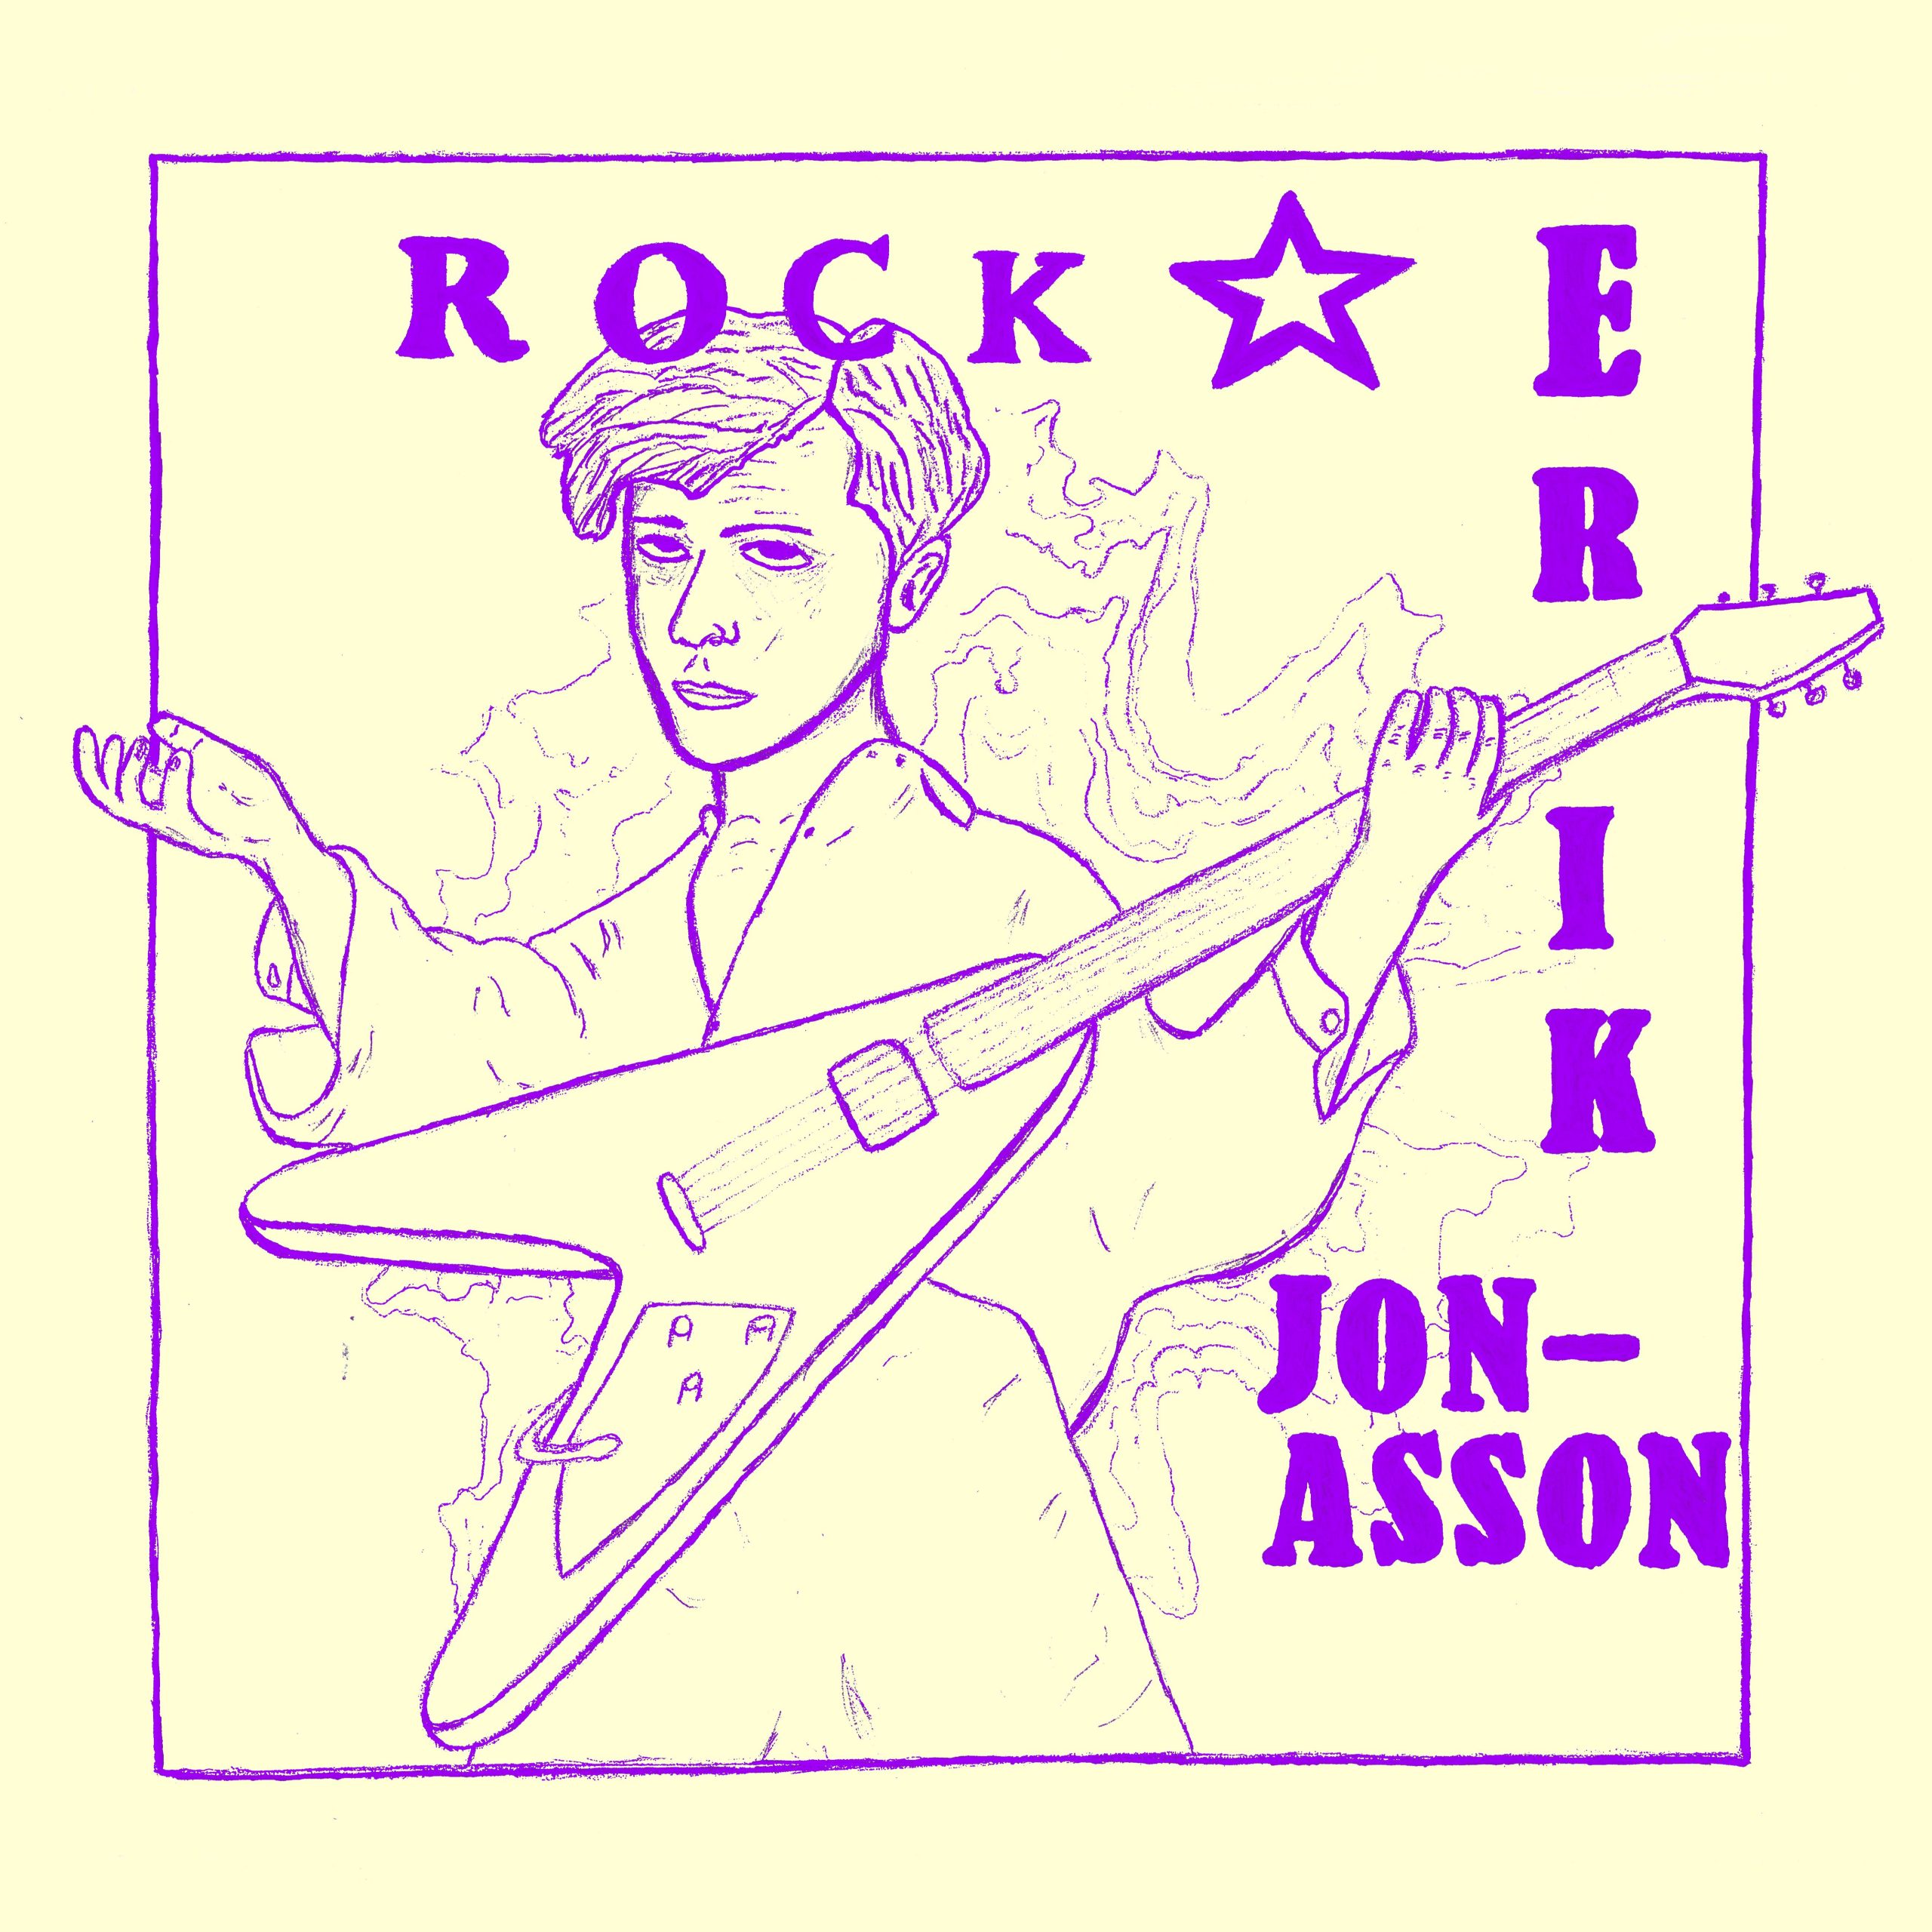 rockstar - erik jonasson - sweden - indie - indie music - indie pop - indie rock - indie folk - new music - music blog - wolf in a suit - wolfinasuit - wolf in a suit blog - wolf in a suit music blog